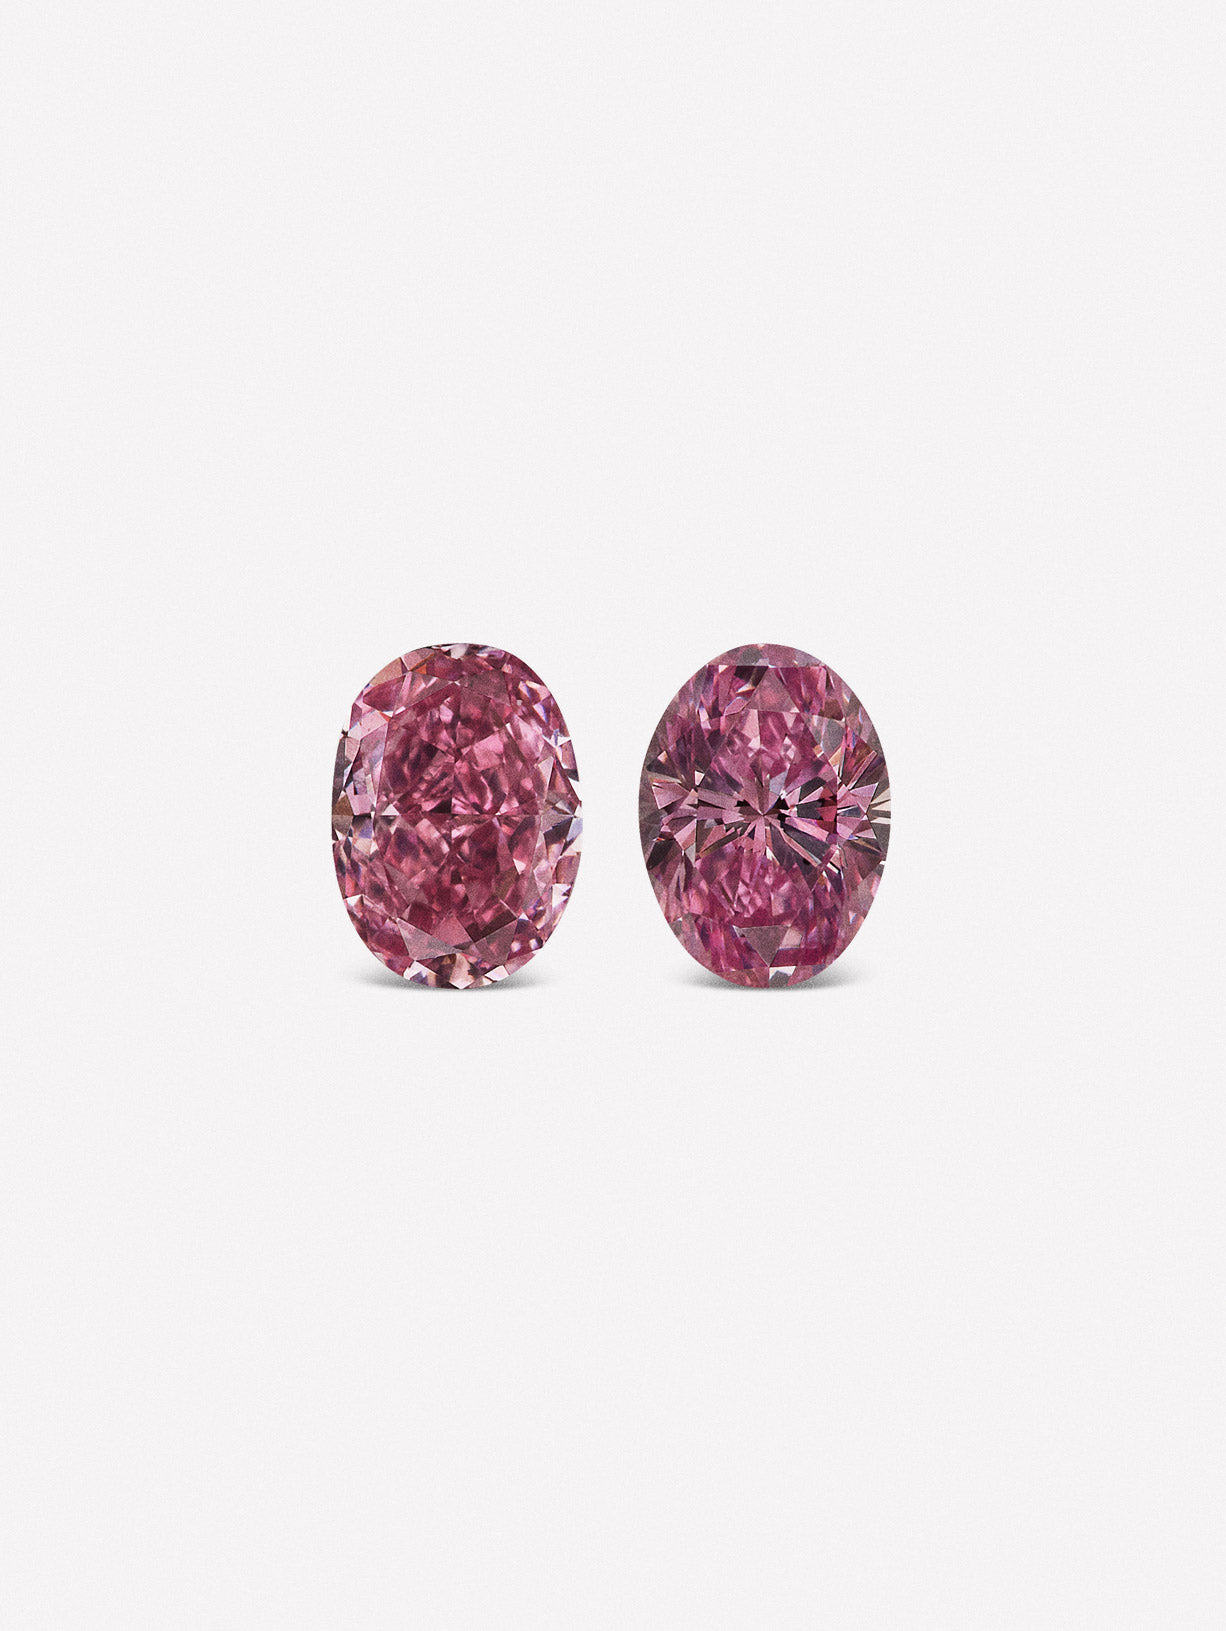 Oval Shaped Argyle Pink™ Diamond Pair